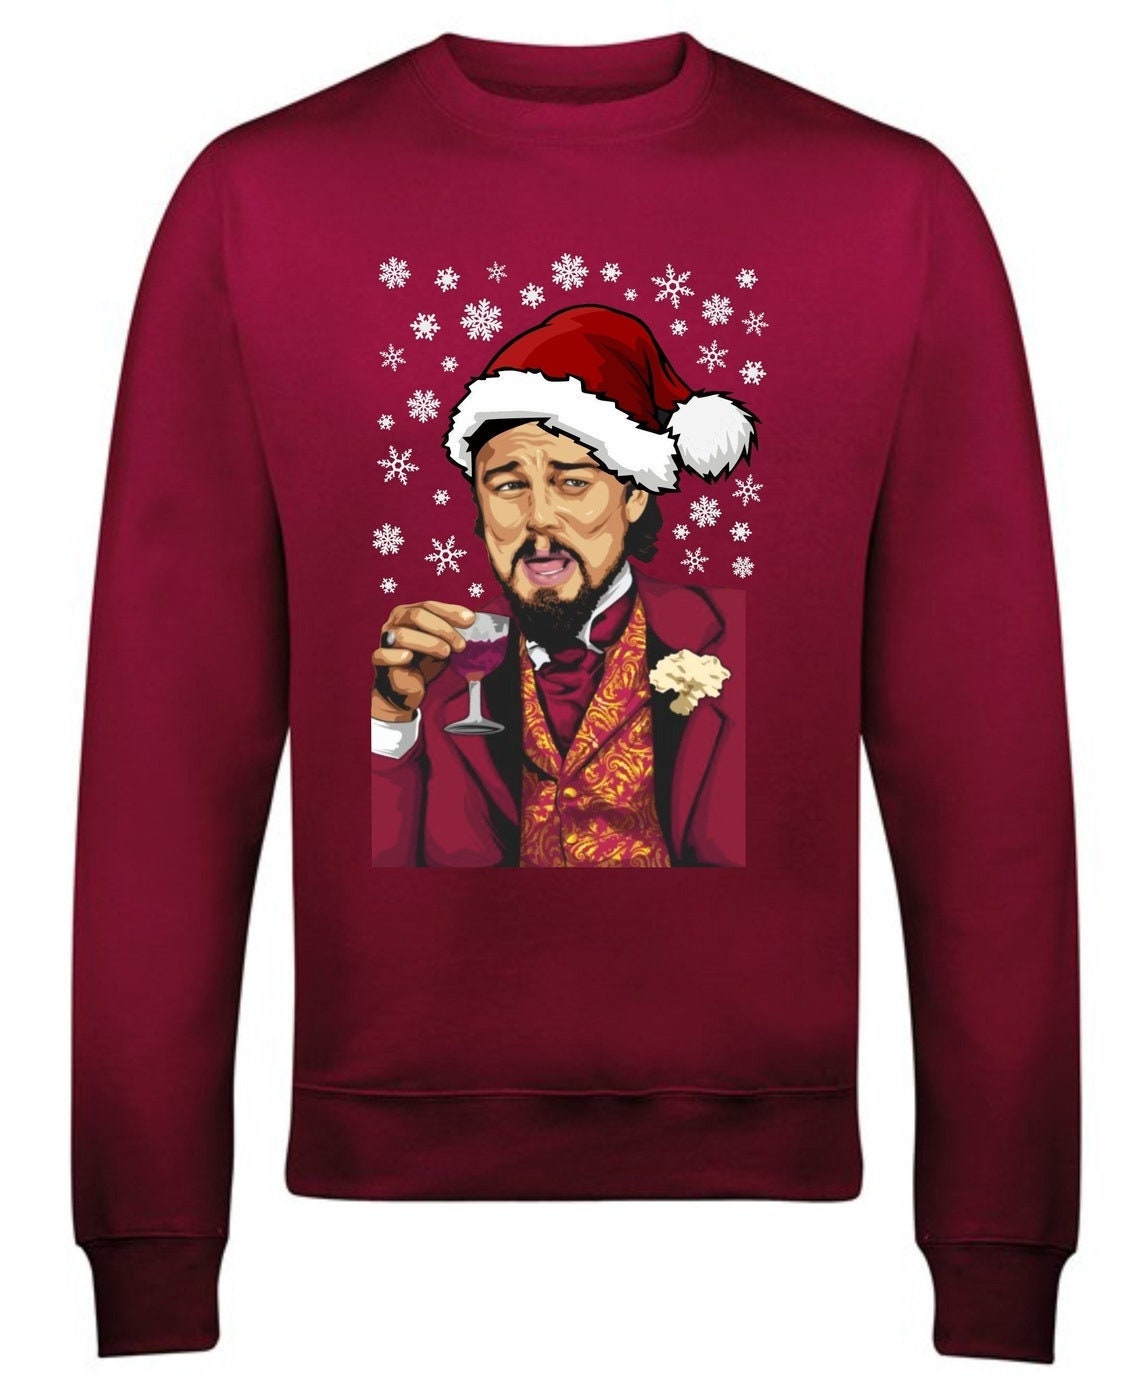 Discover Leonardo Laughing Meme Christmas Jumper Dicaprio Xmas Sweater